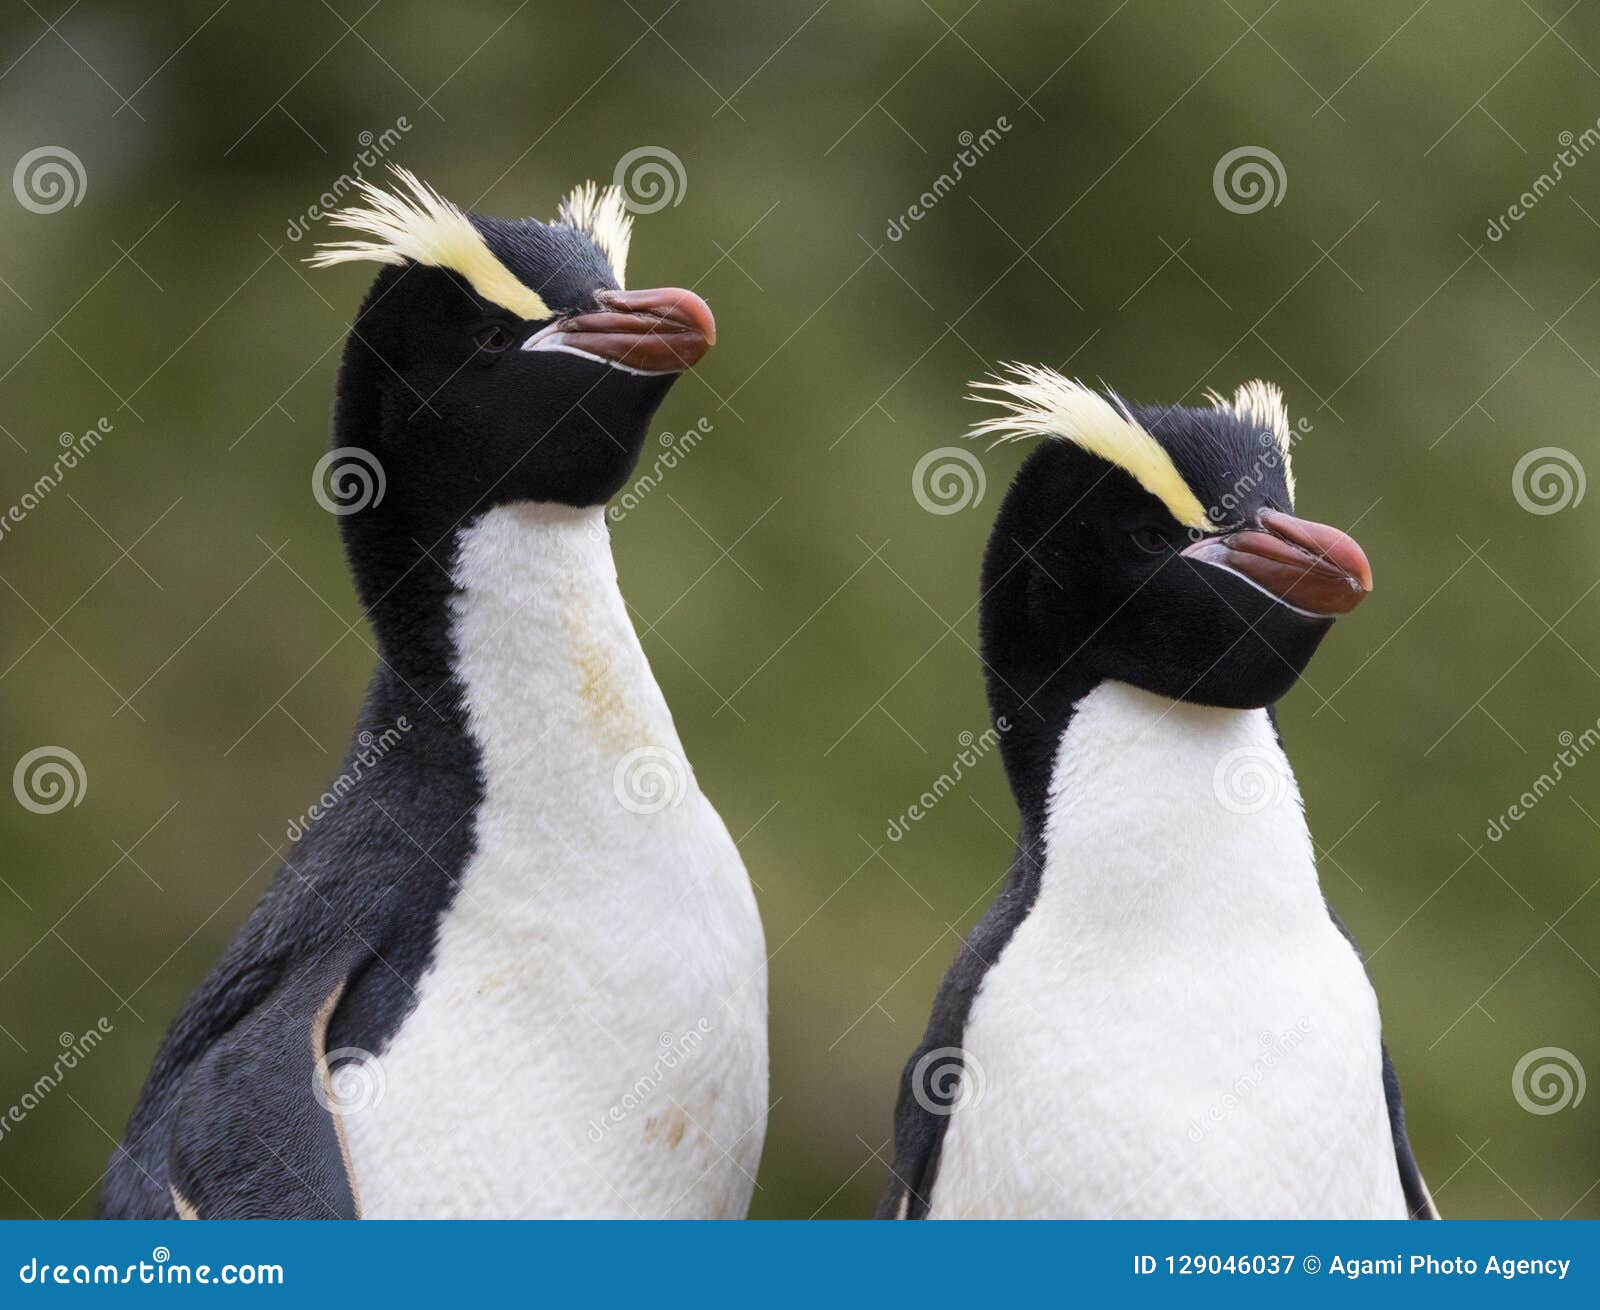 erect-crested penguin, eudyptes sclateri